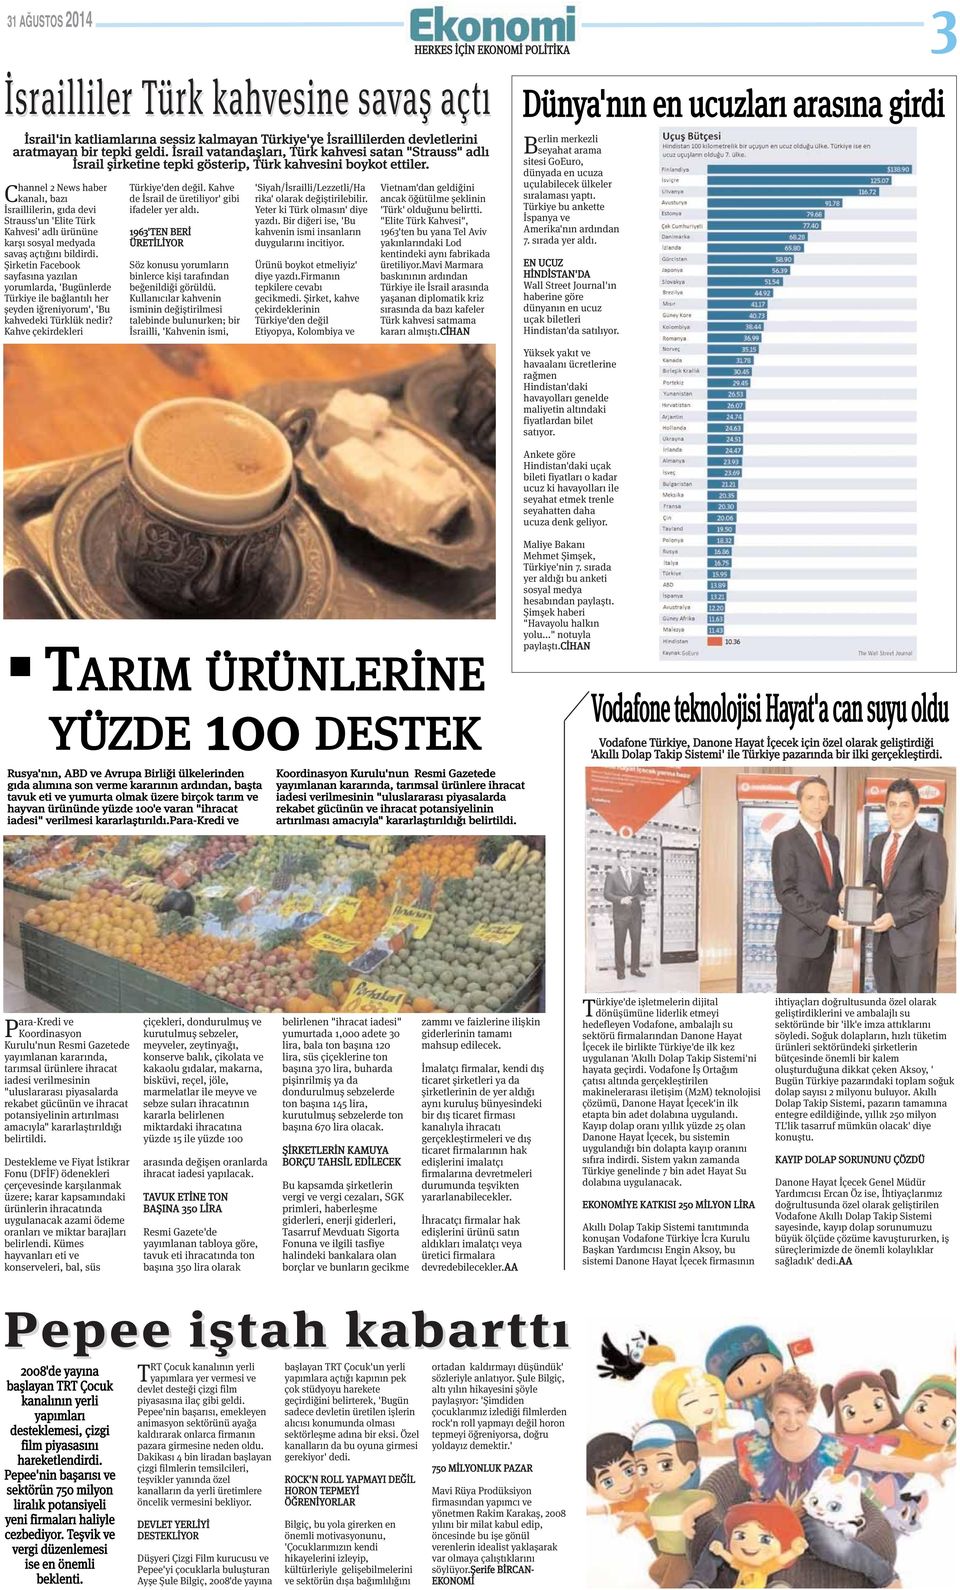 hannel 2 News haber Ckanalı, bazı İsraillilerin, gıda devi Strauss'un 'Elite Türk Kahvesi' adlı ürününe karşı sosyal medyada savaş açtığını bildirdi.